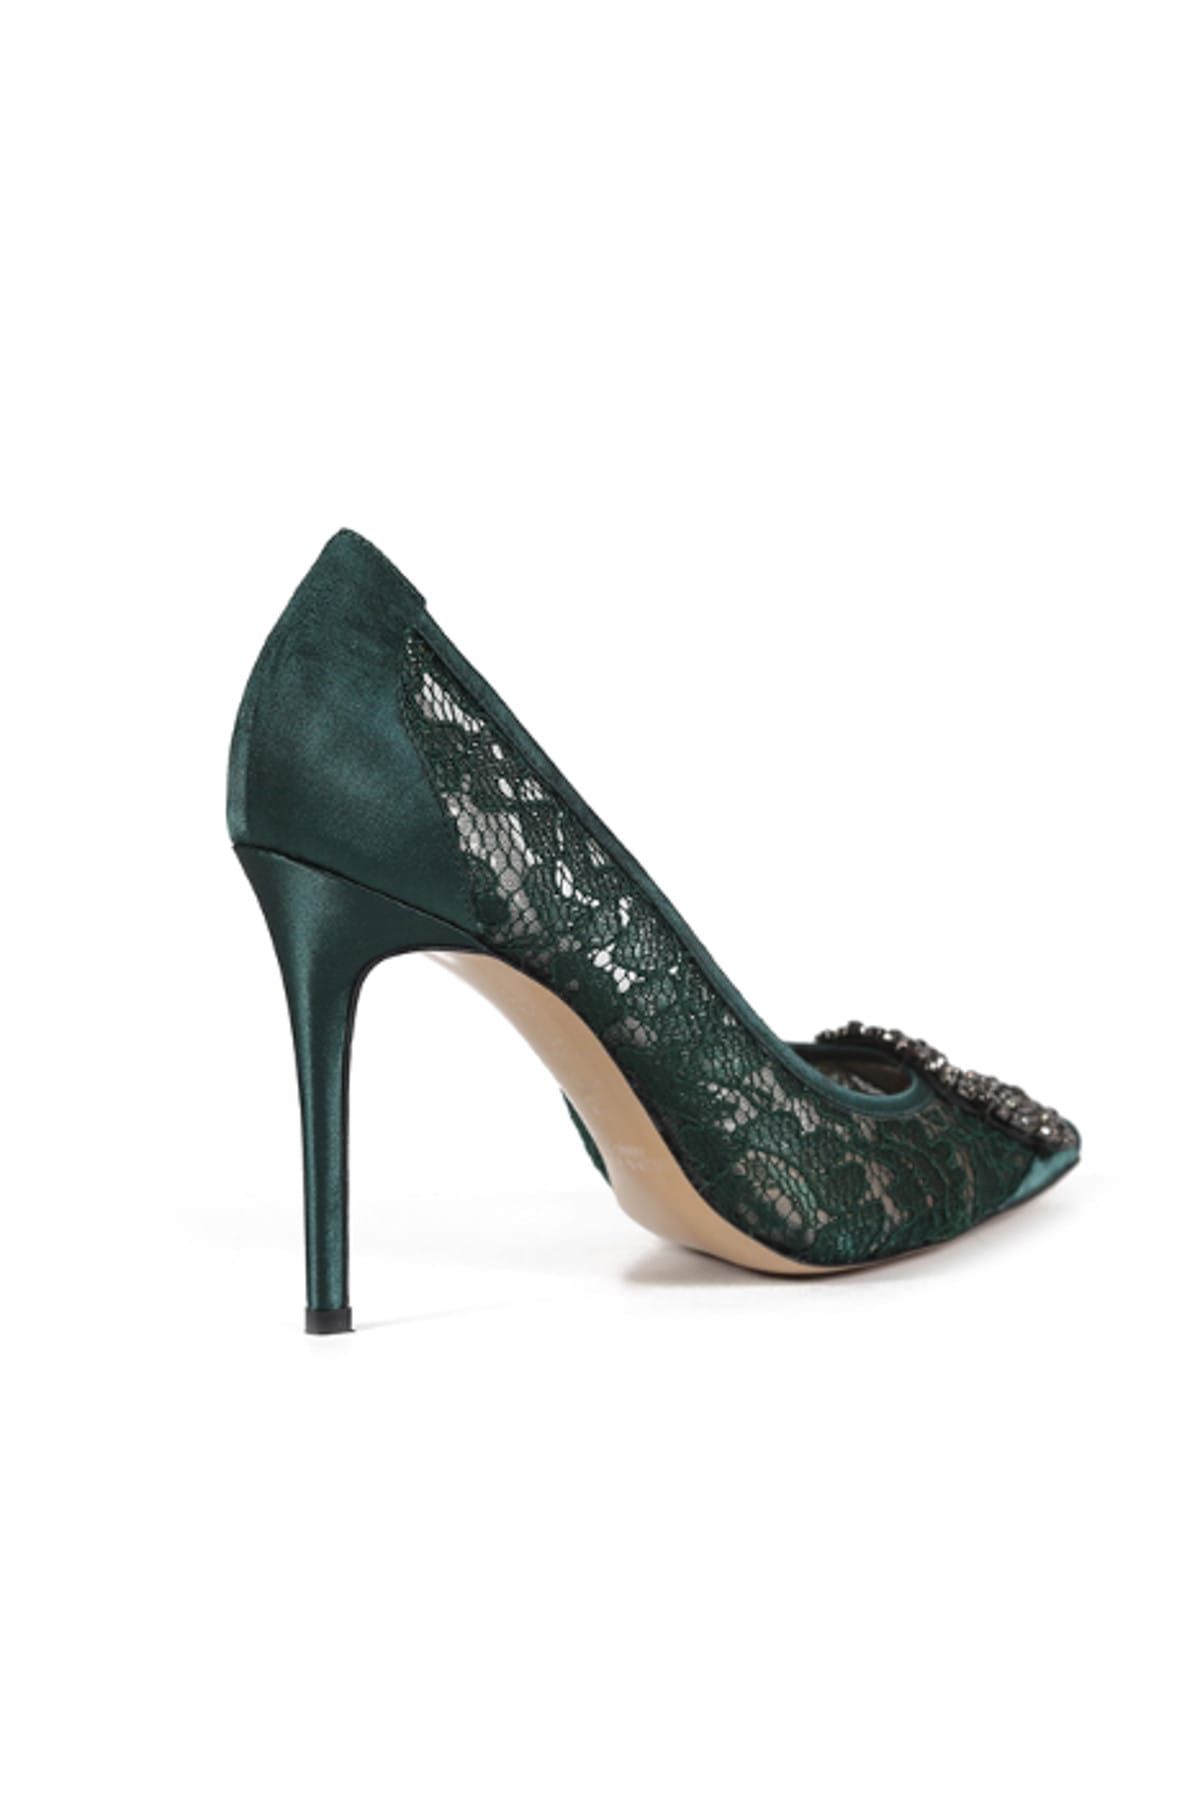 Kadın Yeşil Dantel Taşlı Tokalı Stiletto Ayakkabı 44 001Z_2536_41